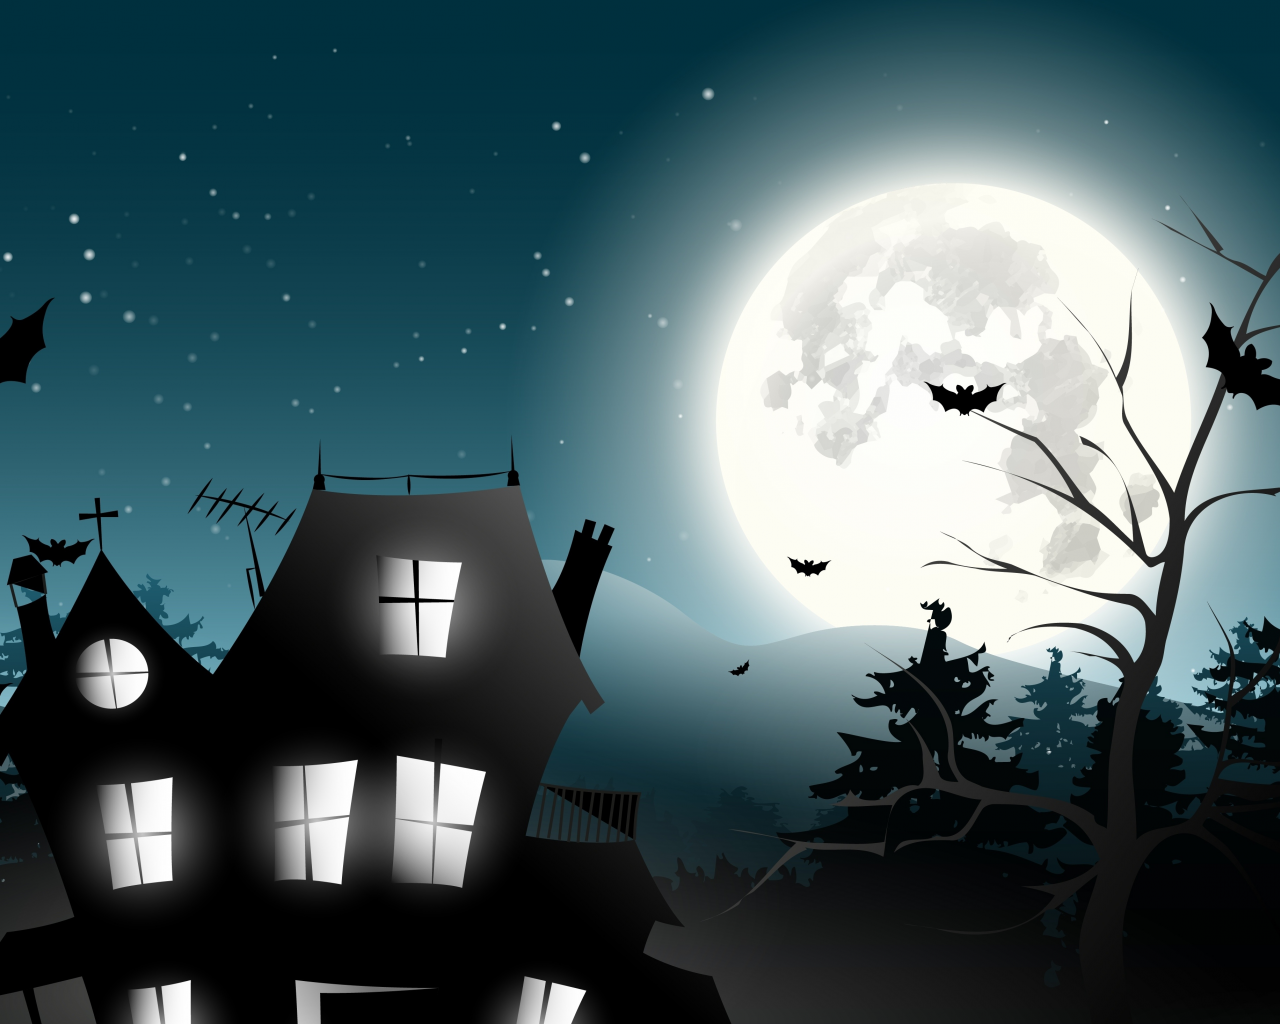 trees, bat, midnight, castle, horror, vector, full moon, holiday halloween, creepy, scary house